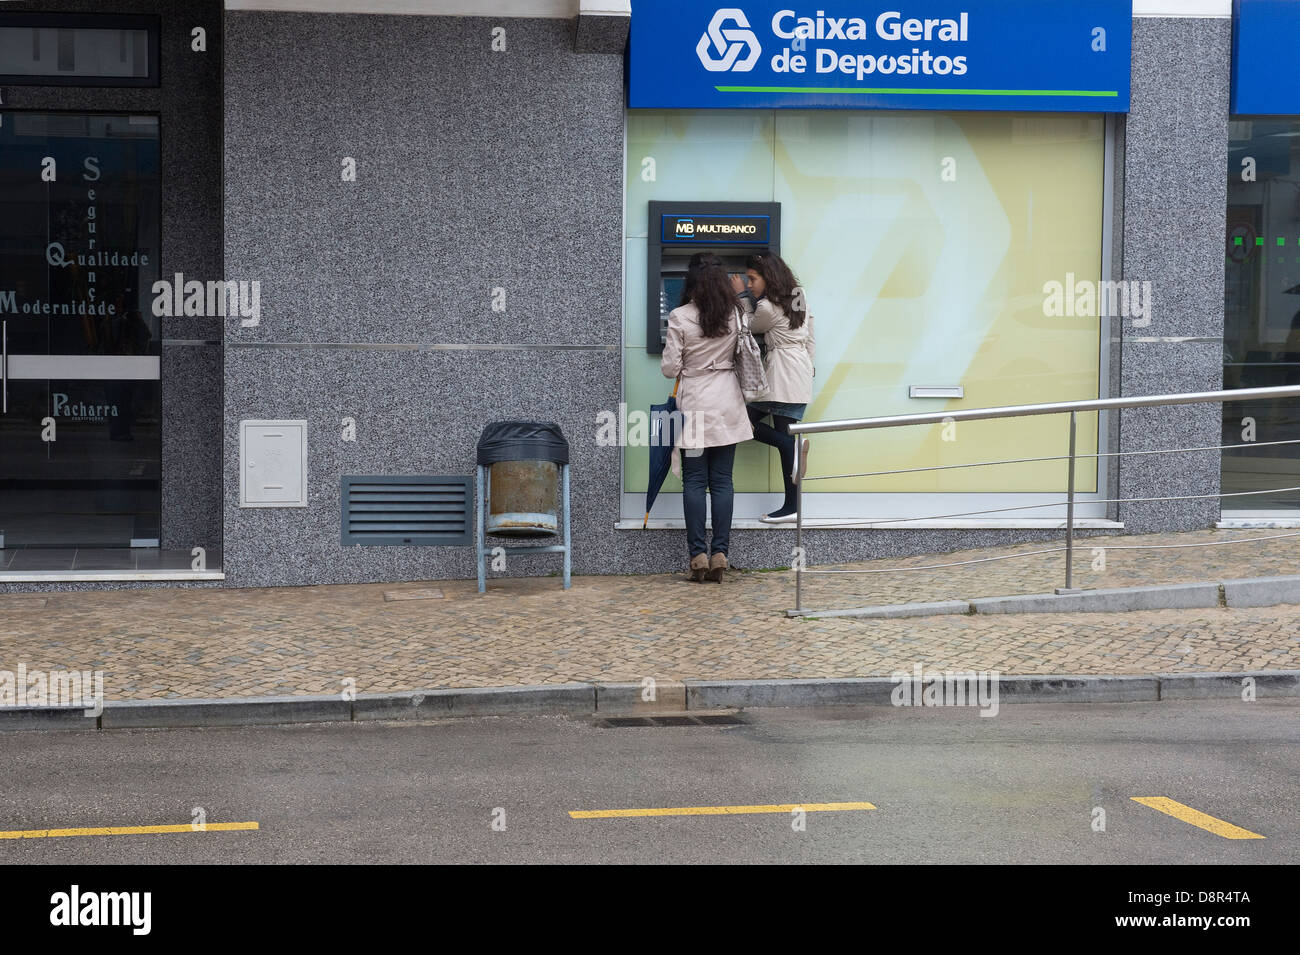 Deux jeune femme de la Caixa Geral de Depositos distributeur automatique de São Brás de Alportel Algarve Portugal Europe Banque D'Images